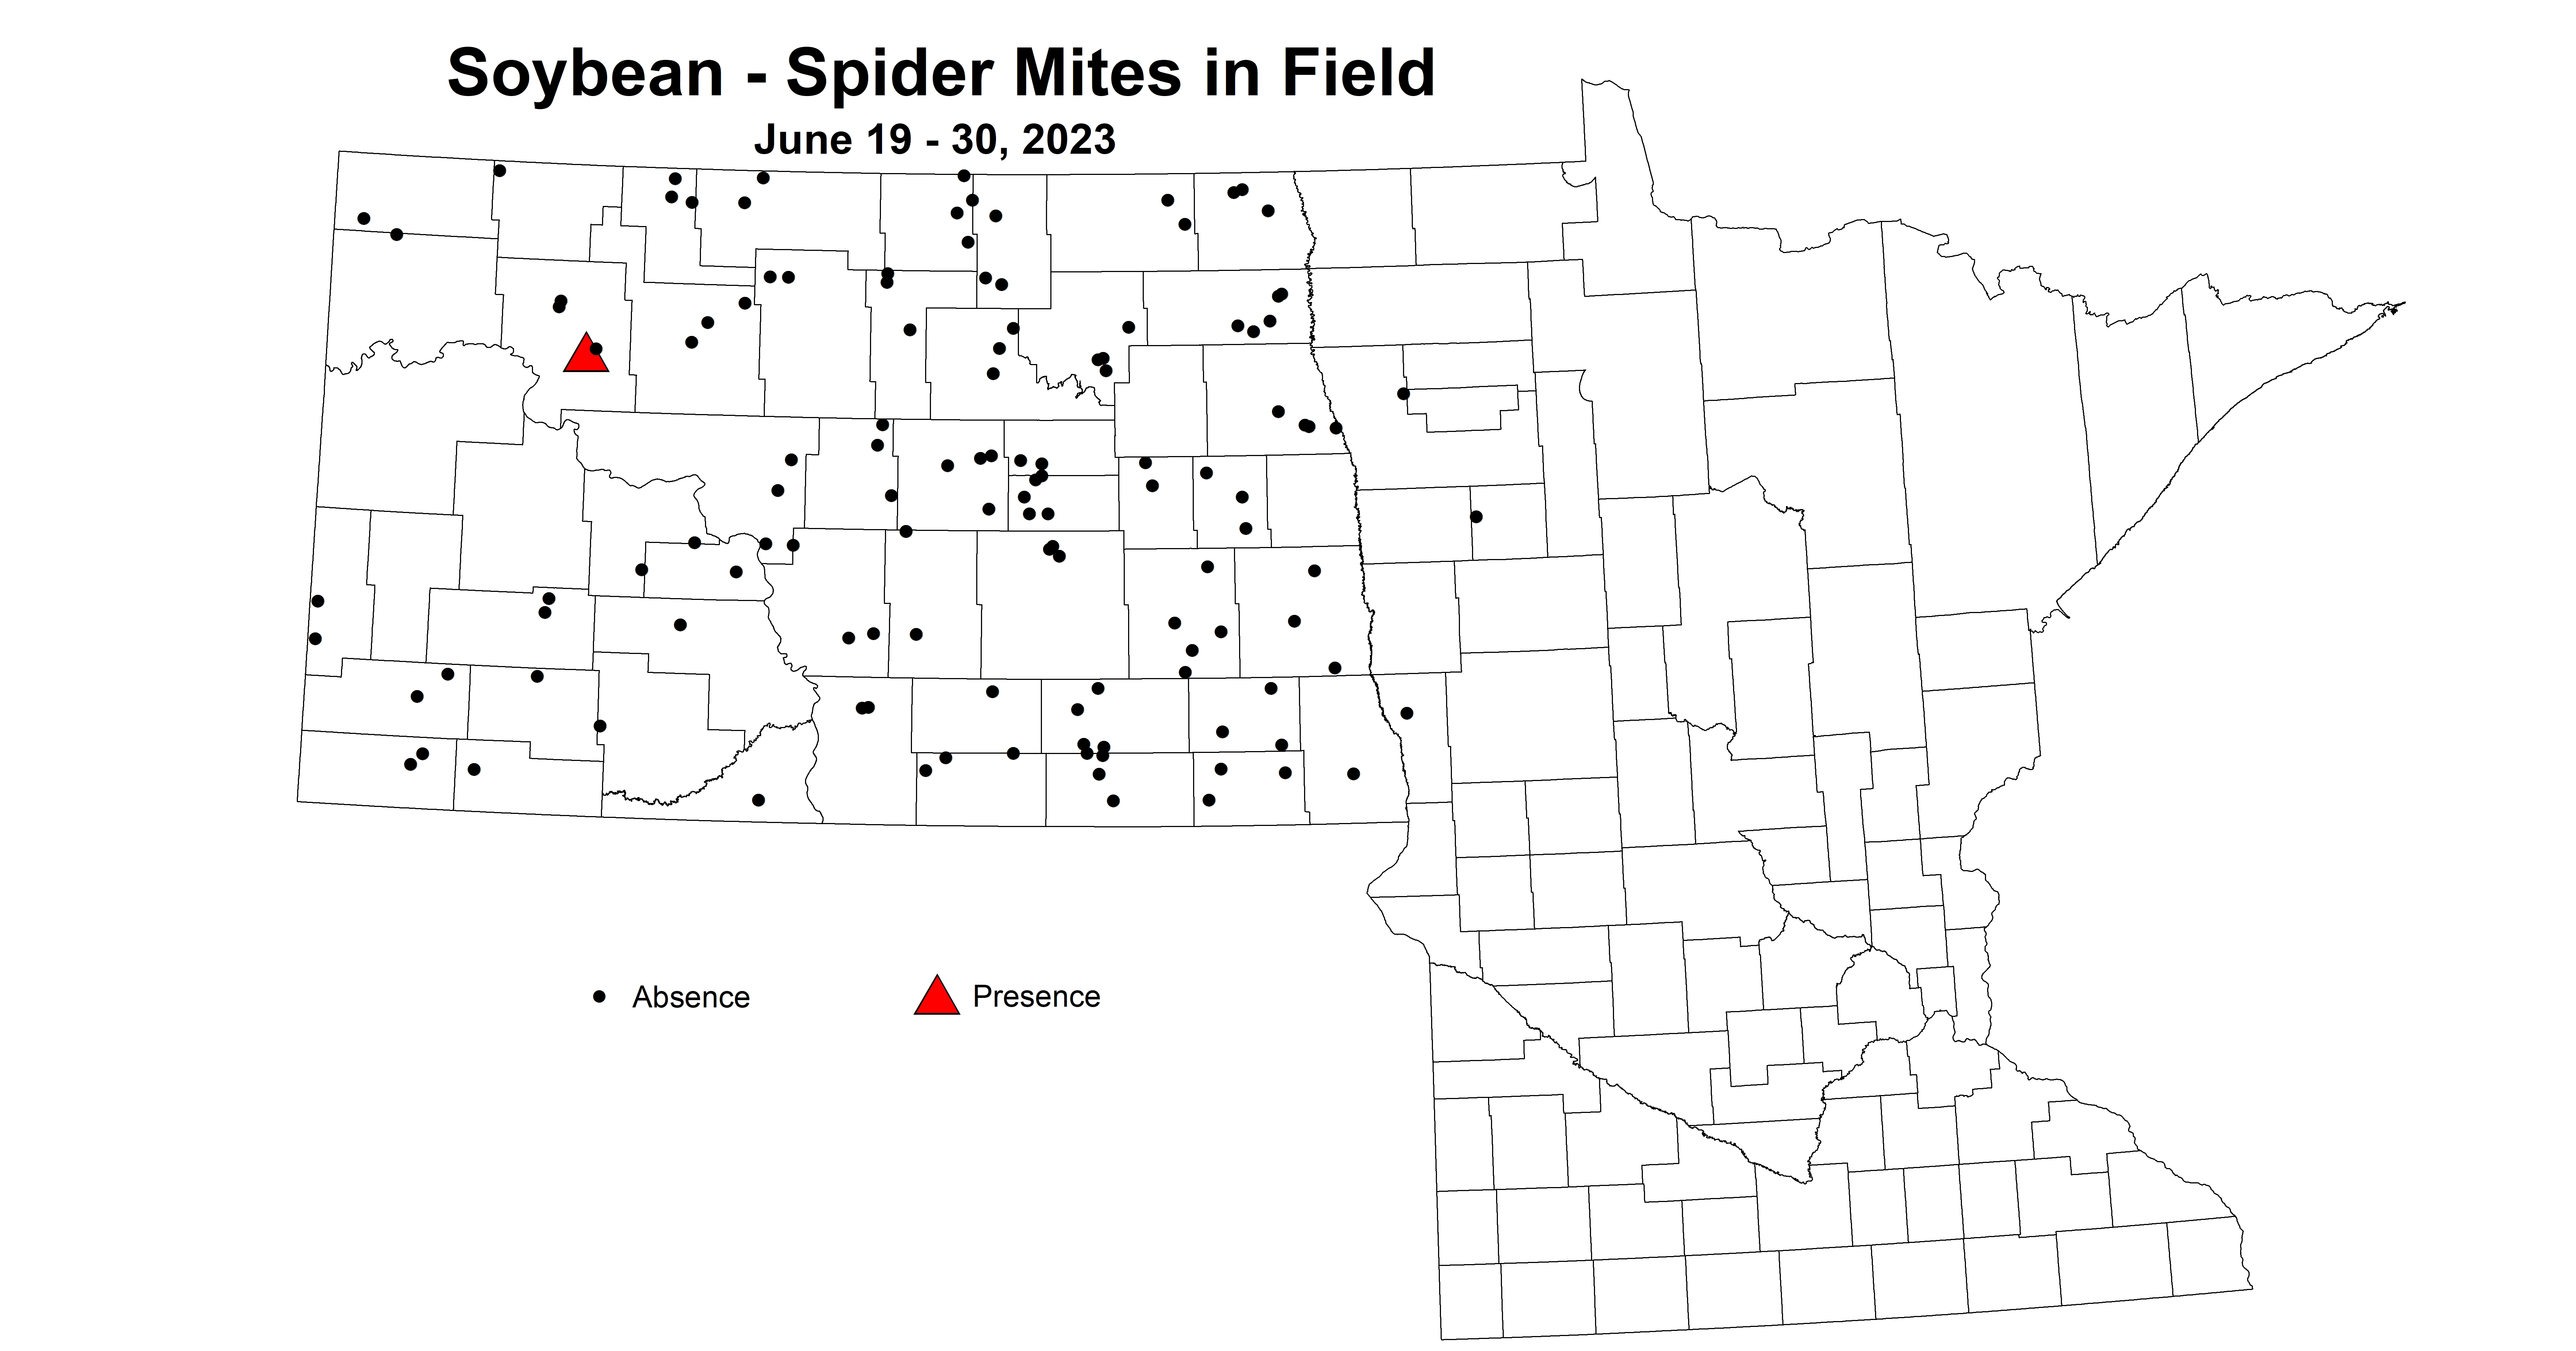 soybean spider mites in field June 19-30 2023